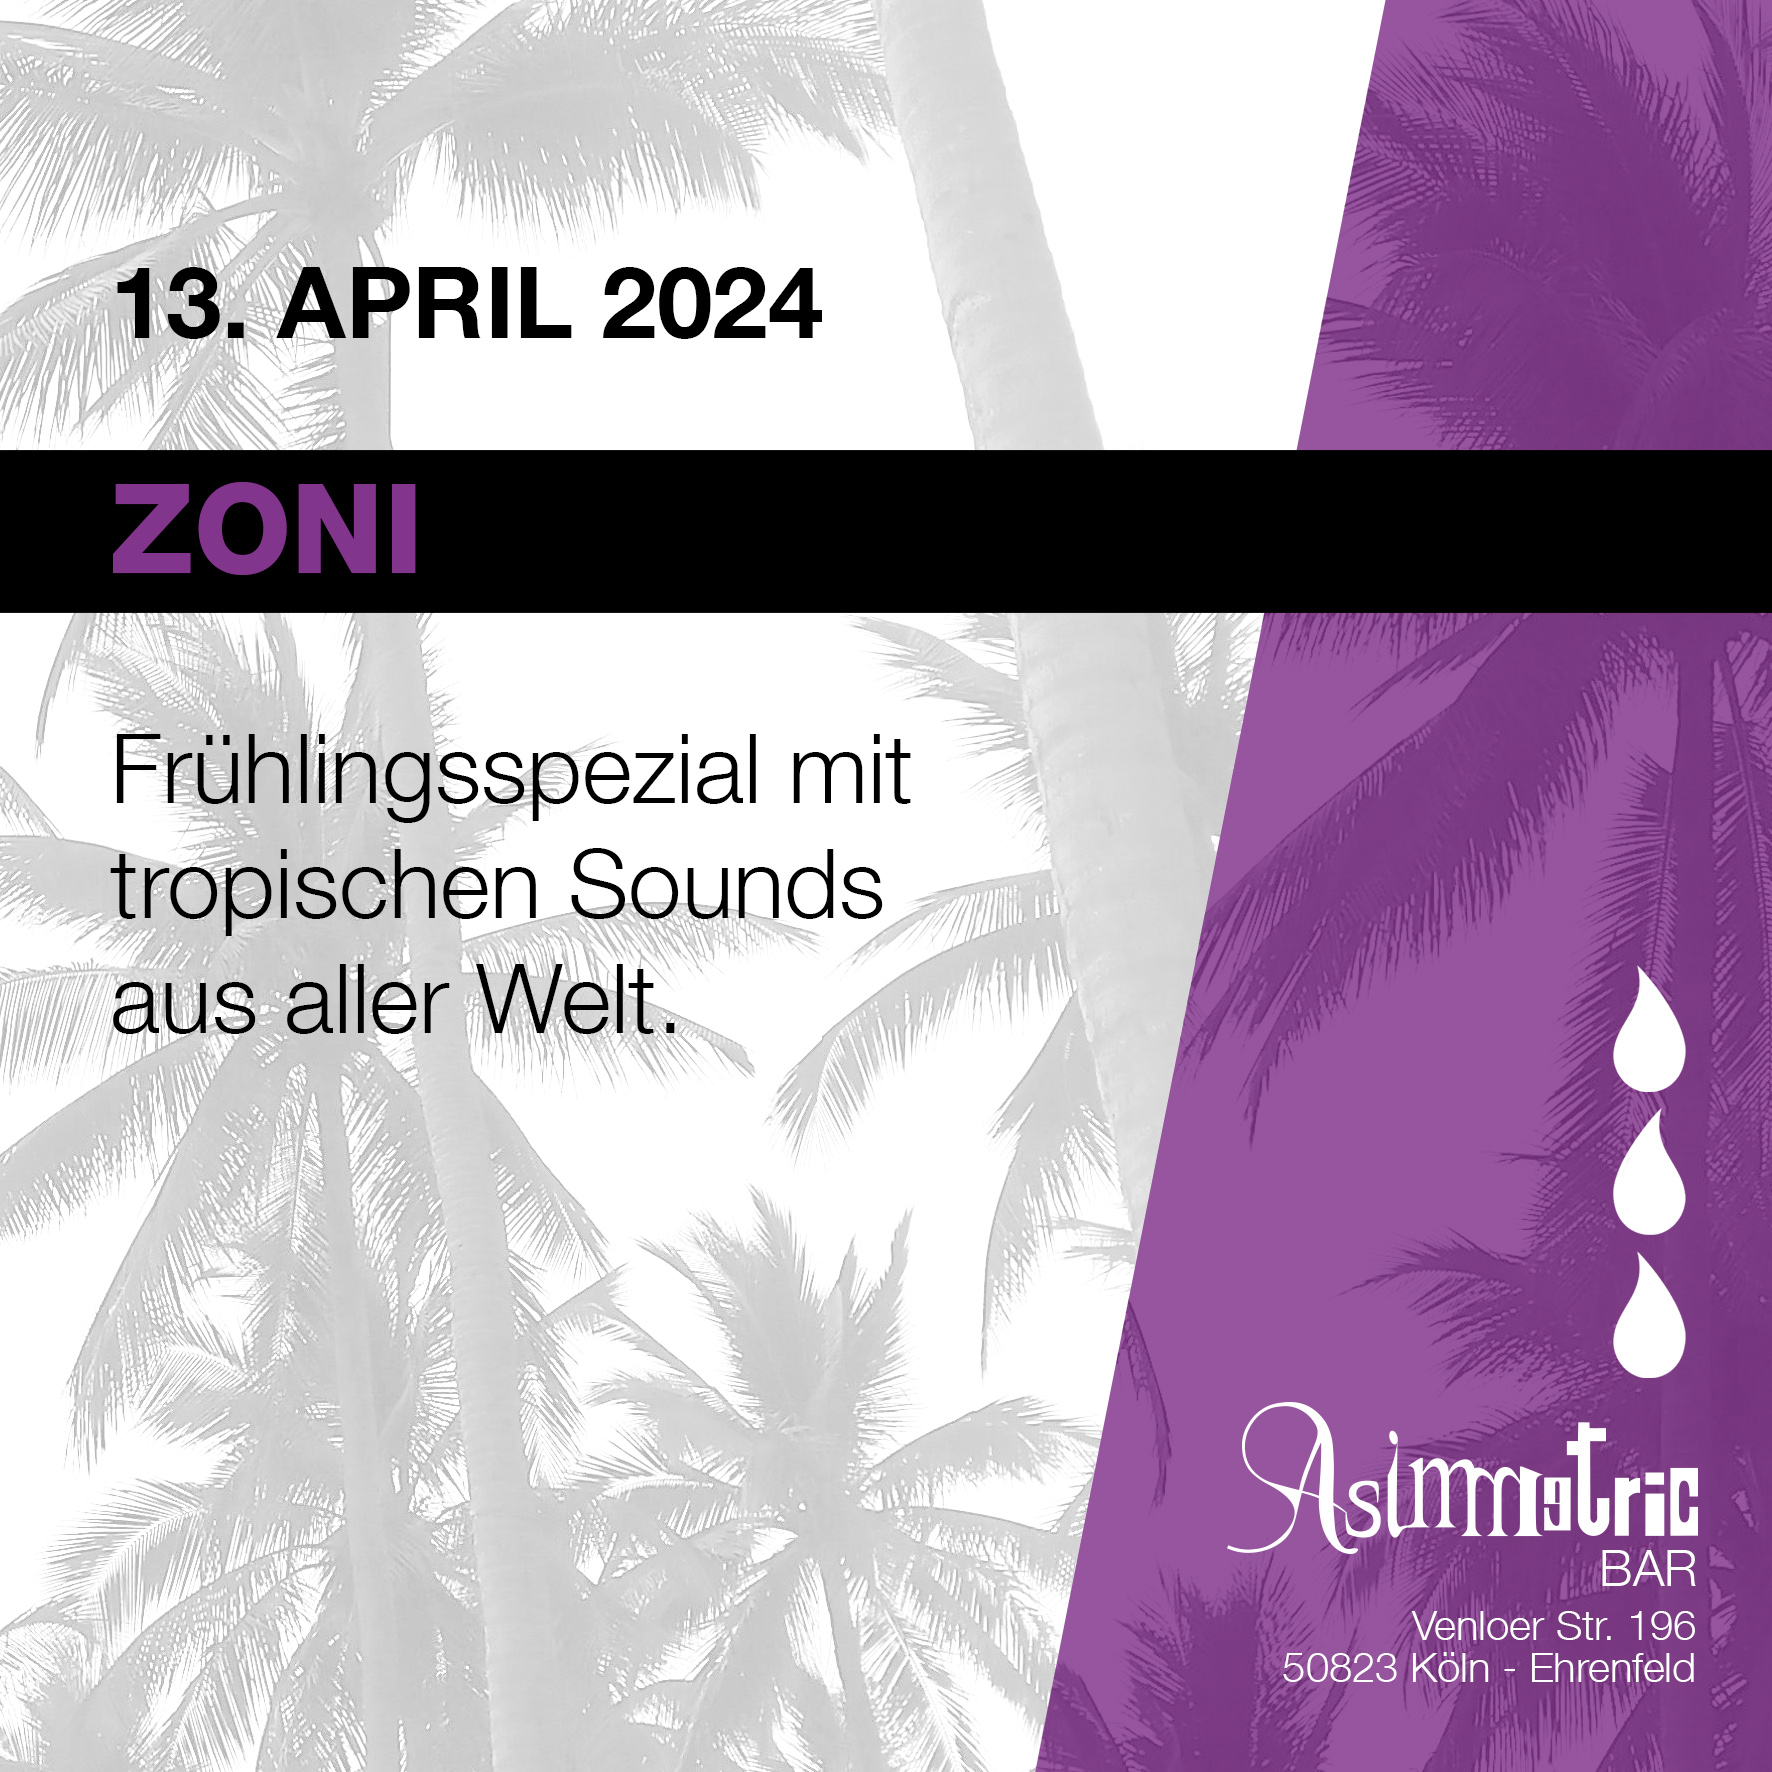 Zoni Frühlingsspezial mit tropischen Sounds - Asimmetric Bar - 13.4.2024